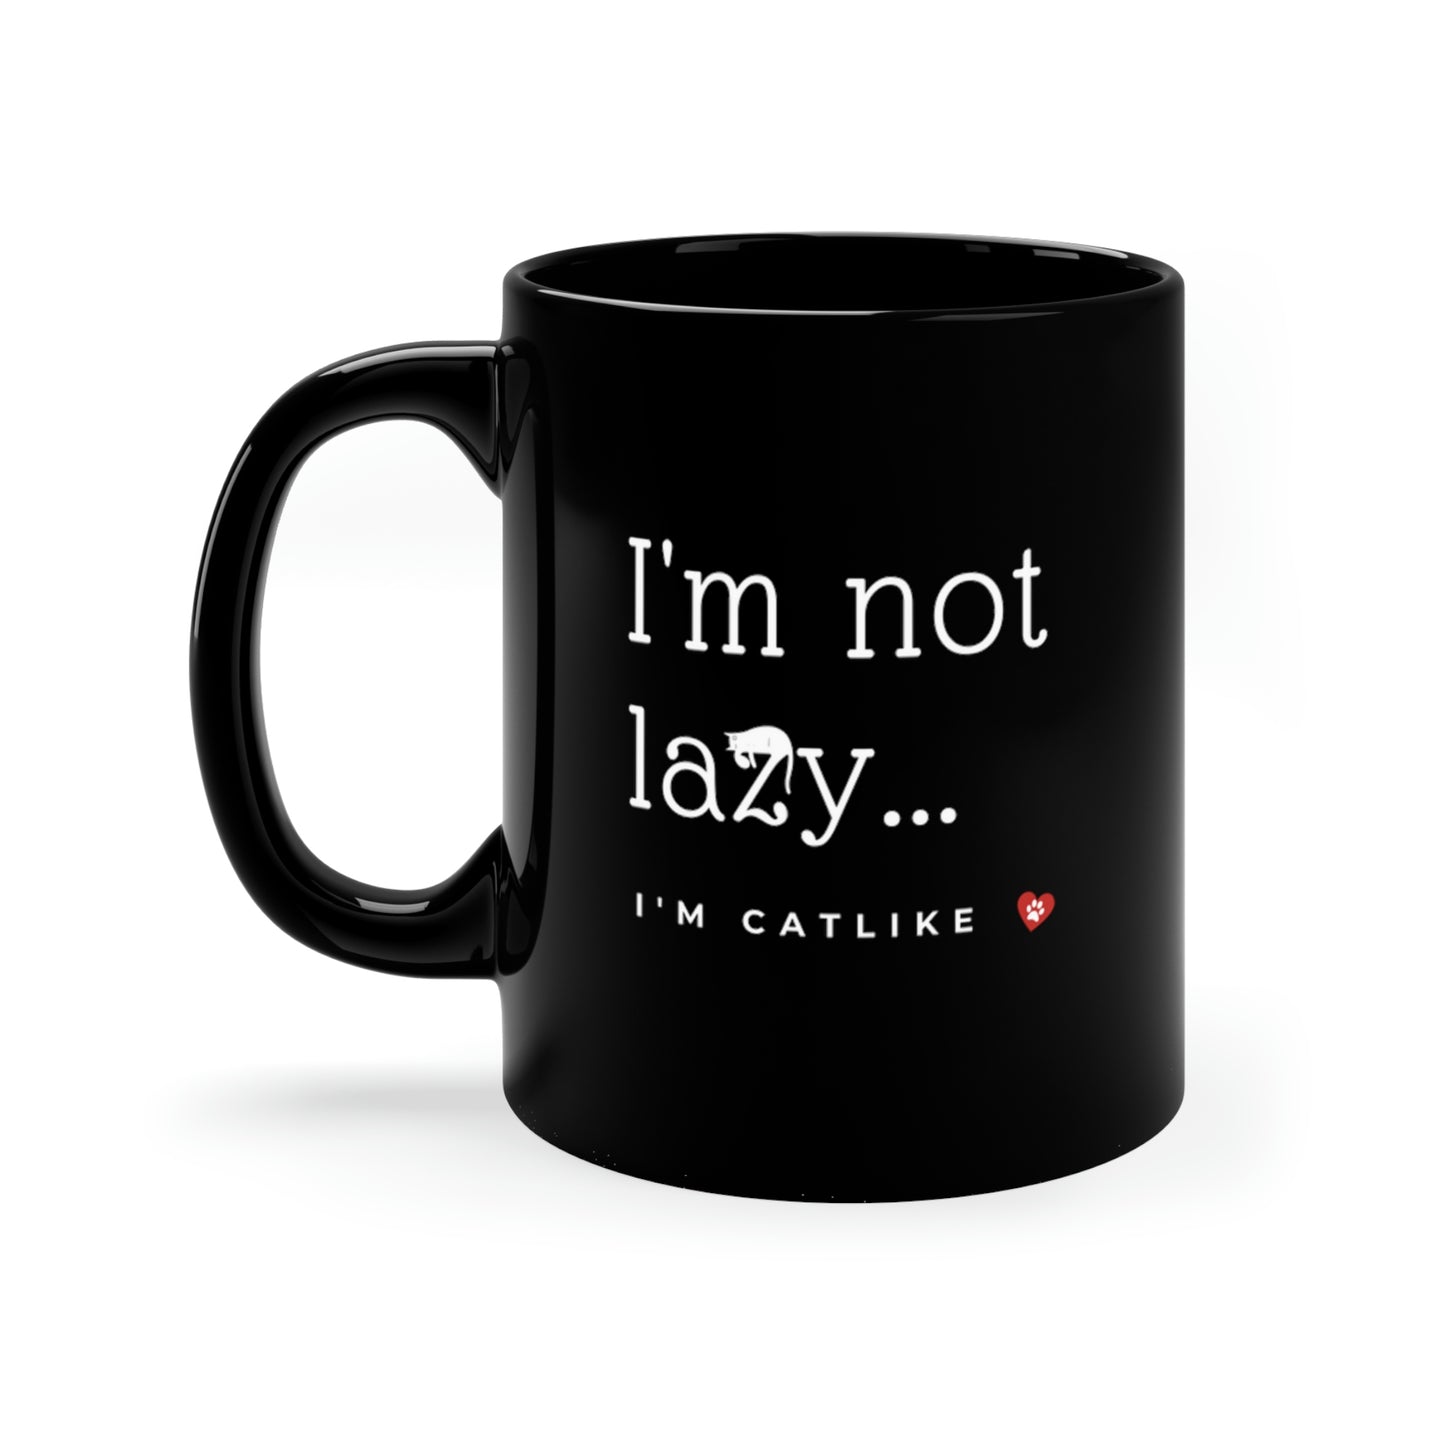 I'm Not Lazy Mug